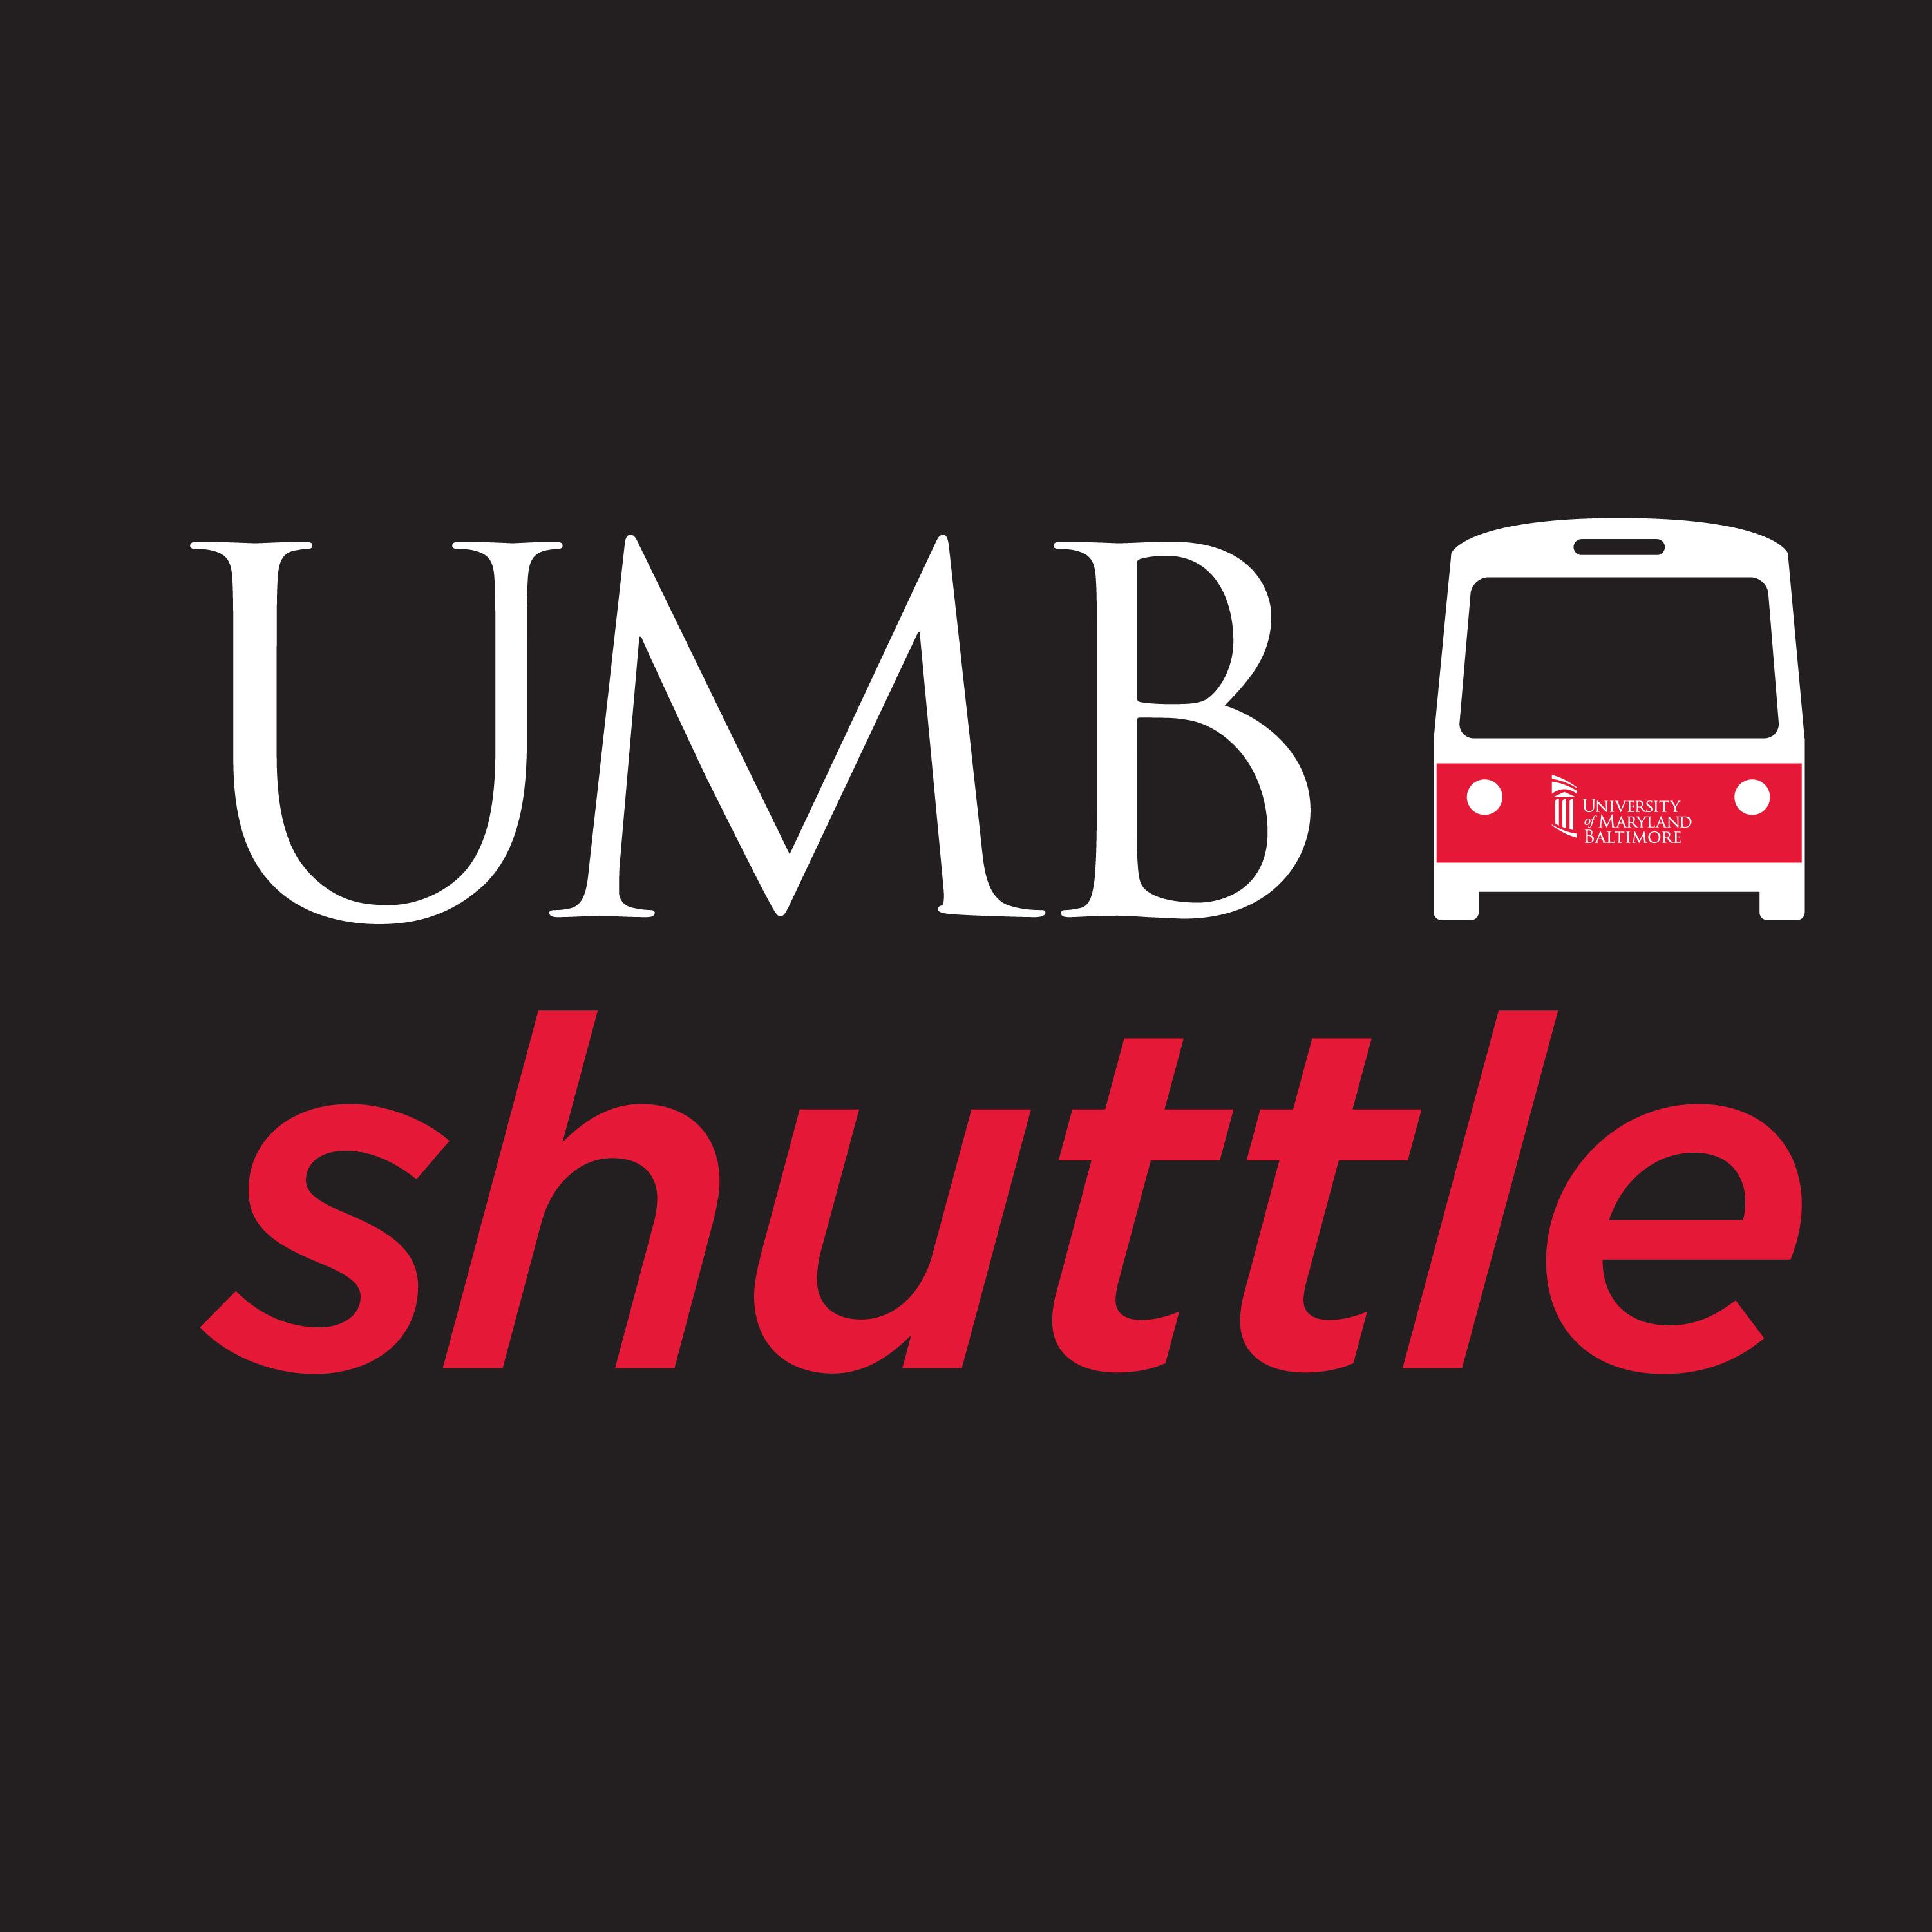 UMB shuttle logo